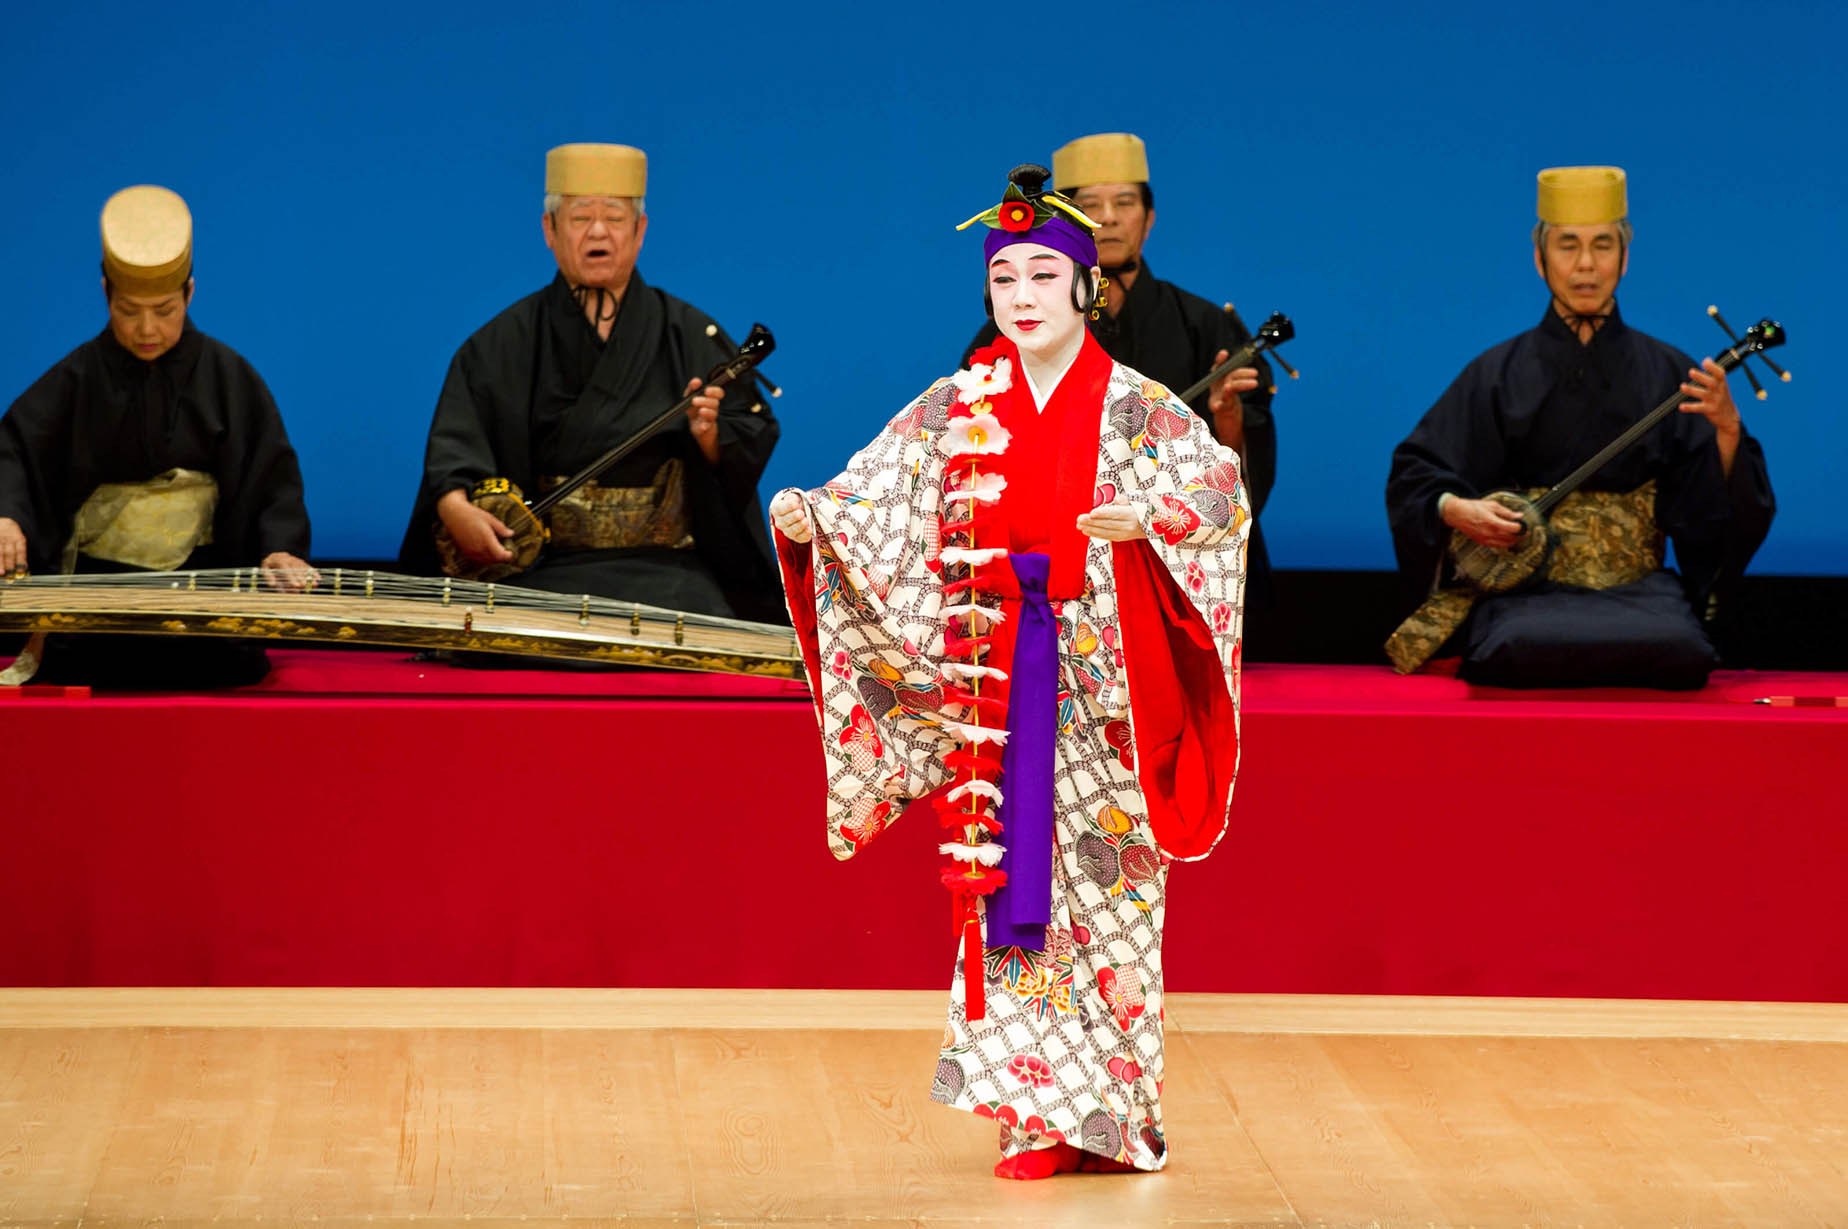 傳統琉球舞蹈